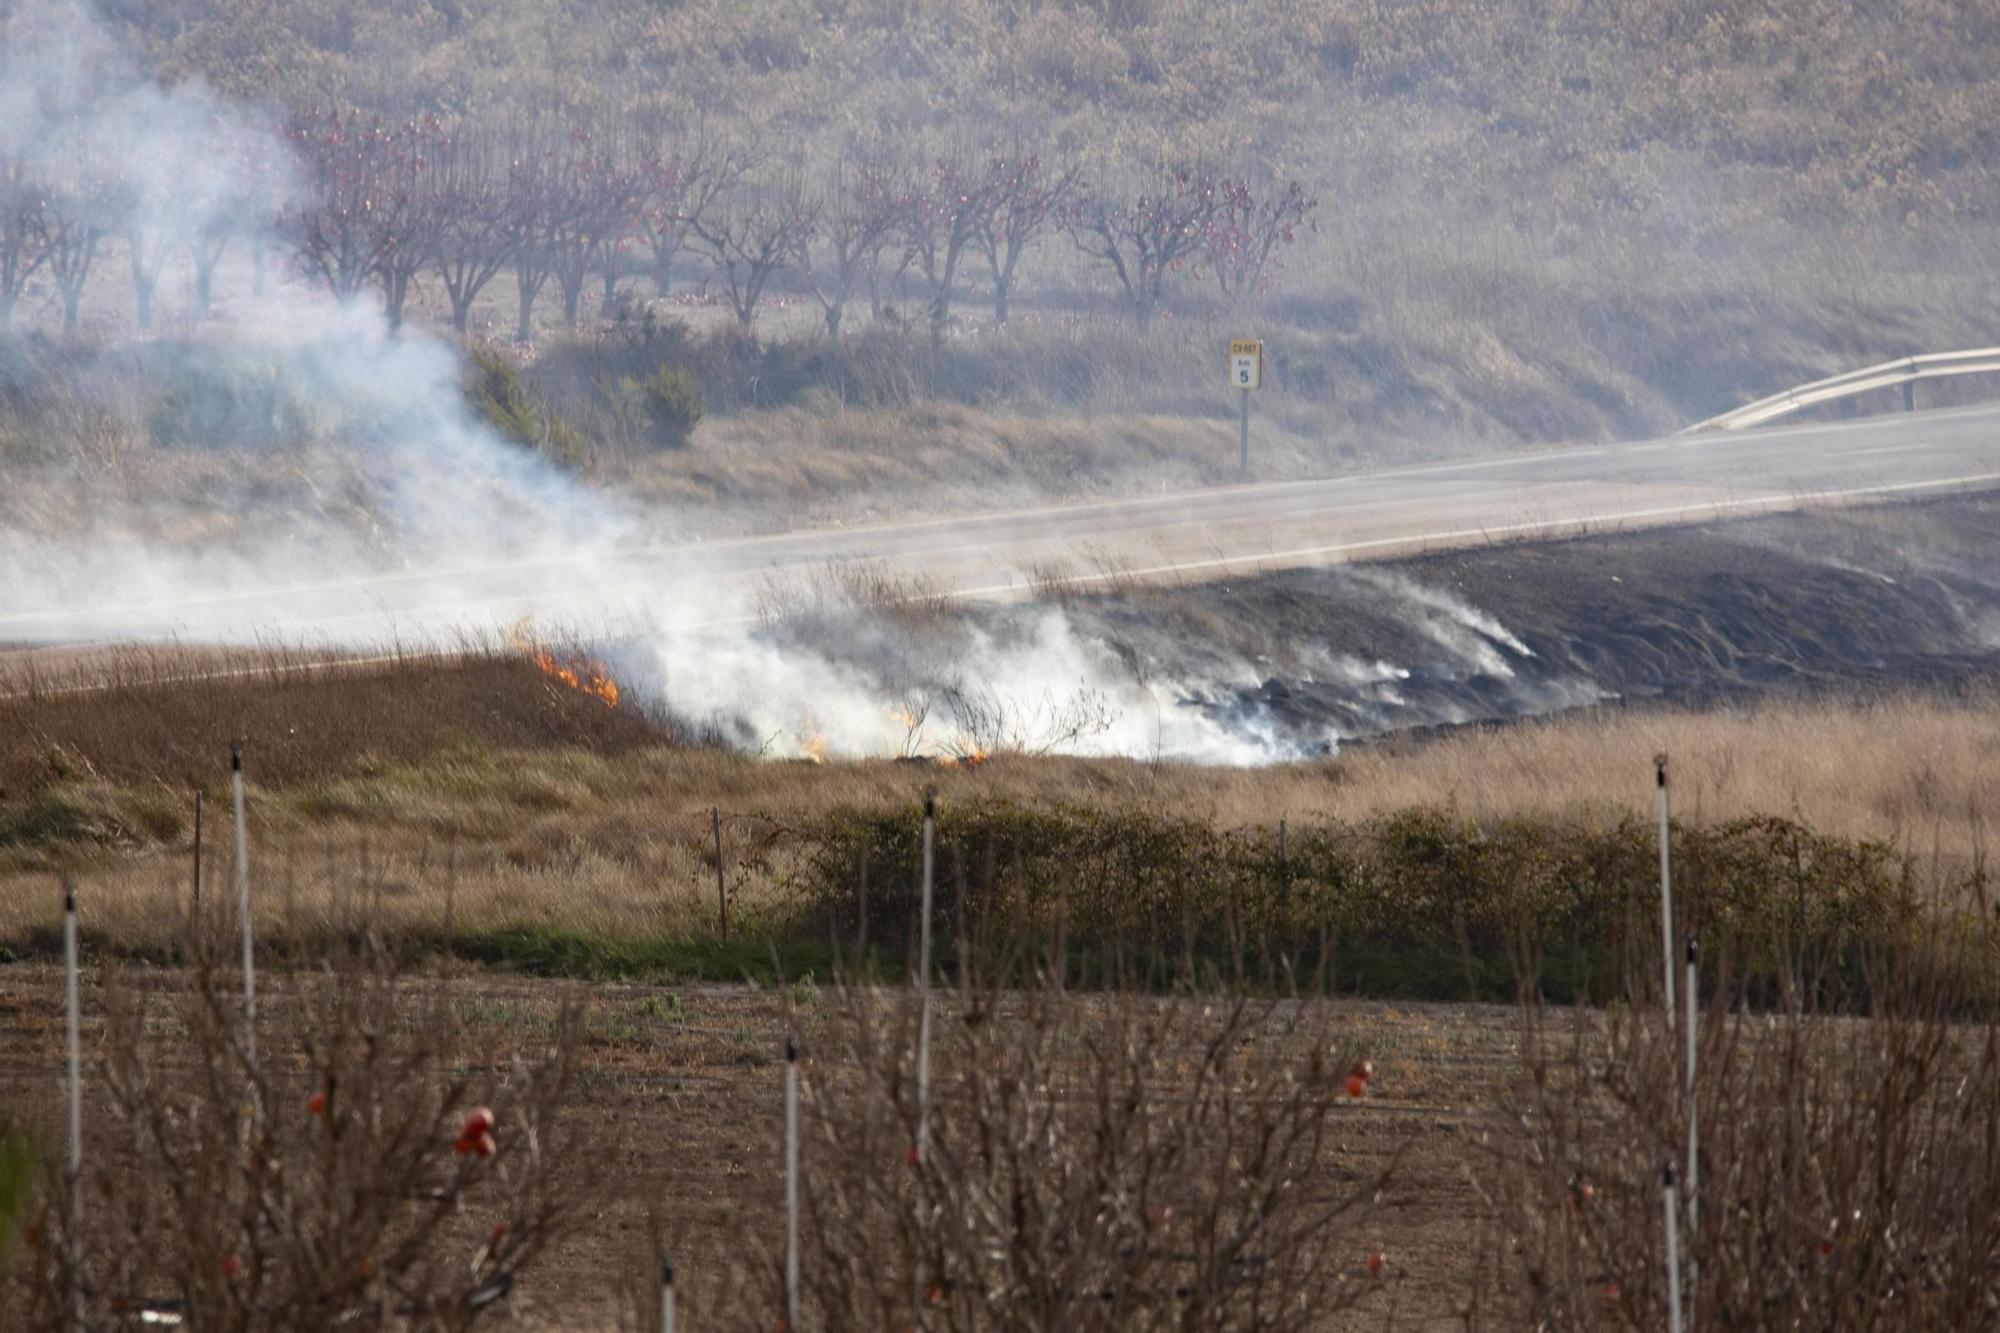 Movilizan varios medios aéreas para extinguir un incendio cercano a una pirotecnica en Bèlgida